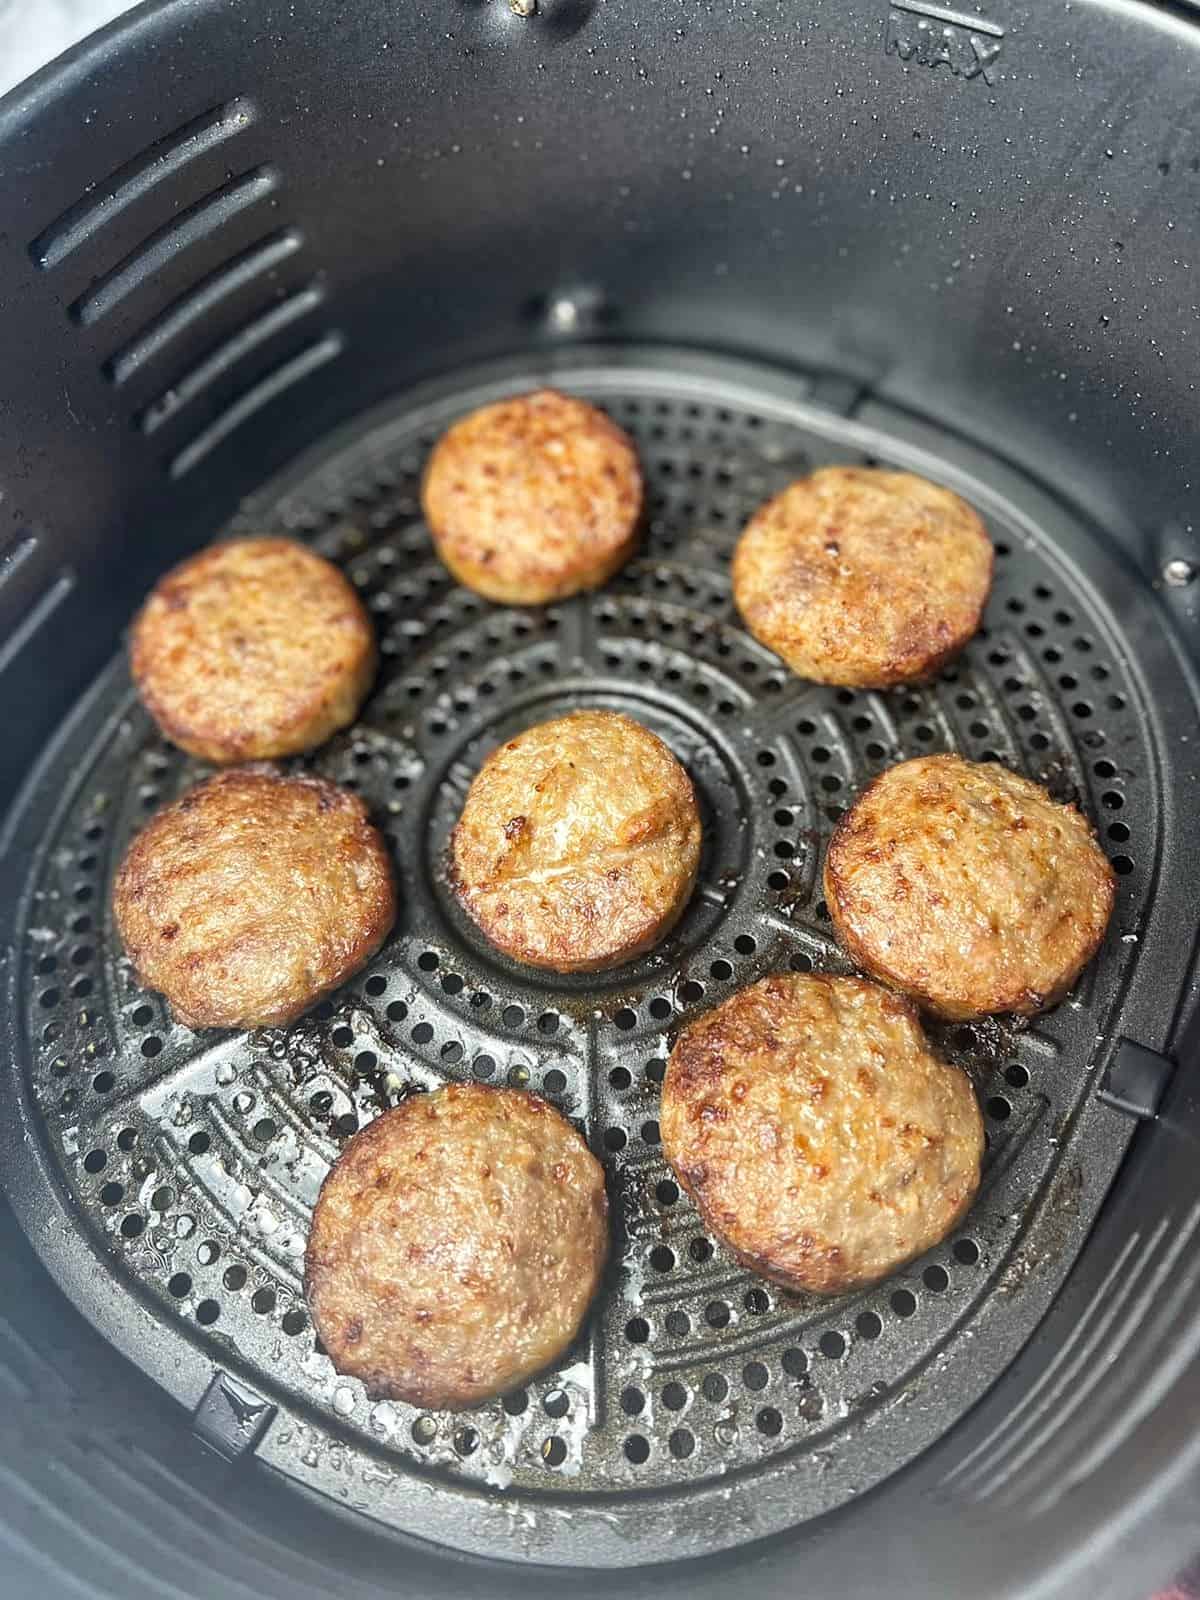 cooked sausage patties displayed in air fryer basket.